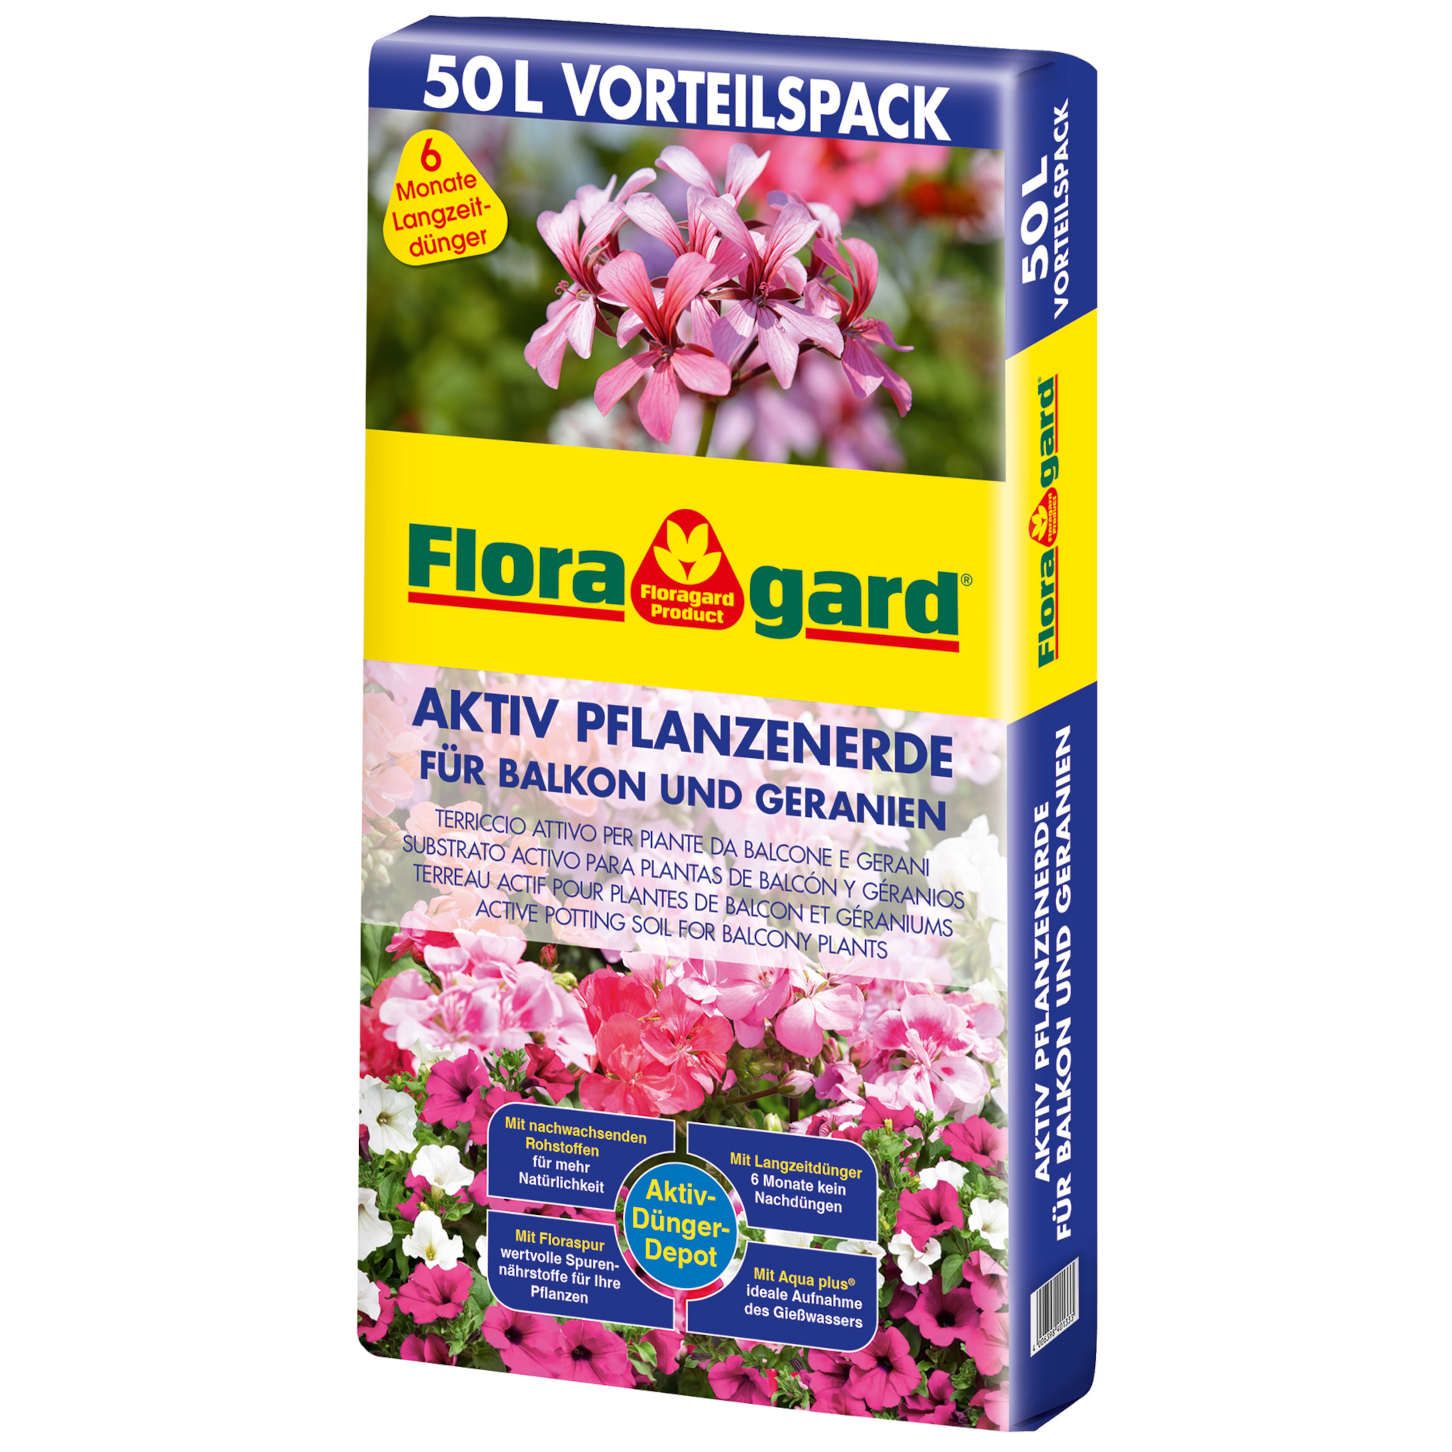 Floragard Aktiv Pflanzenerde für Balkon und Geranien 1x50 L